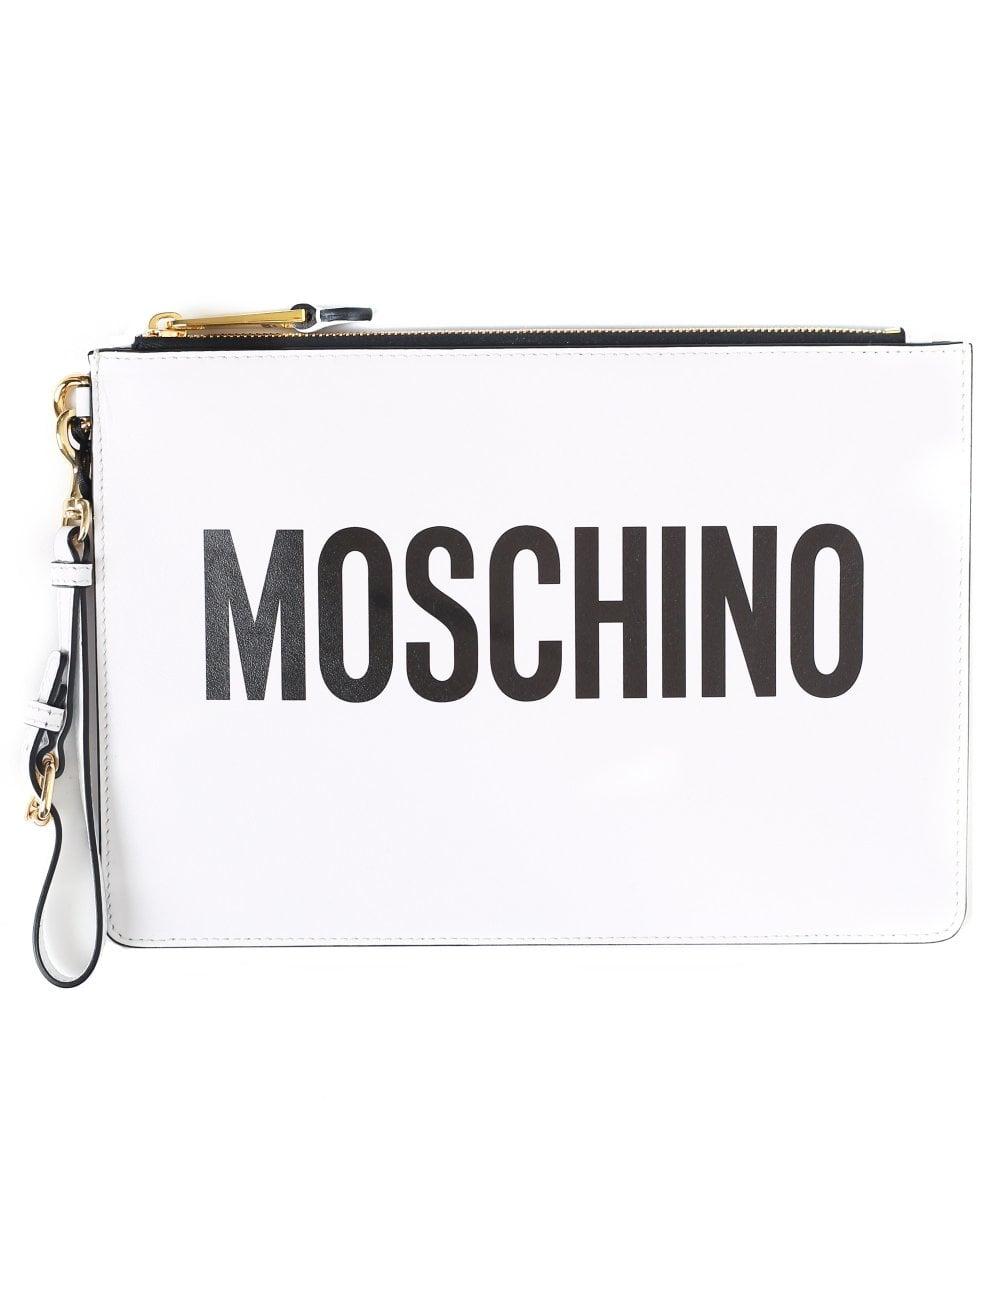 Moschino Couture Logo - Moschino Couture Women's Logo Clutch